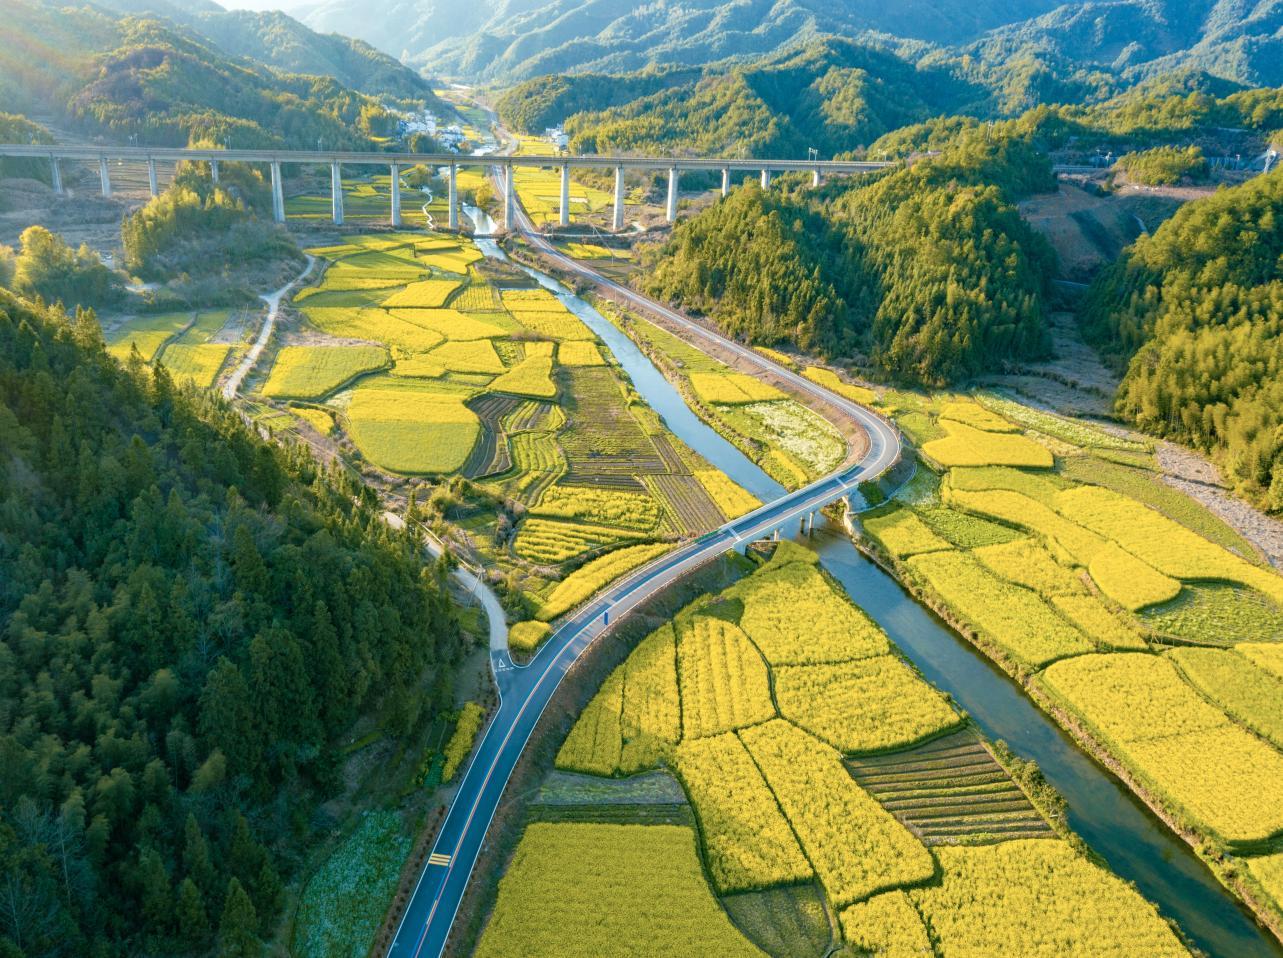 江西交工路桥工程公司:用最美公路装扮最美乡村